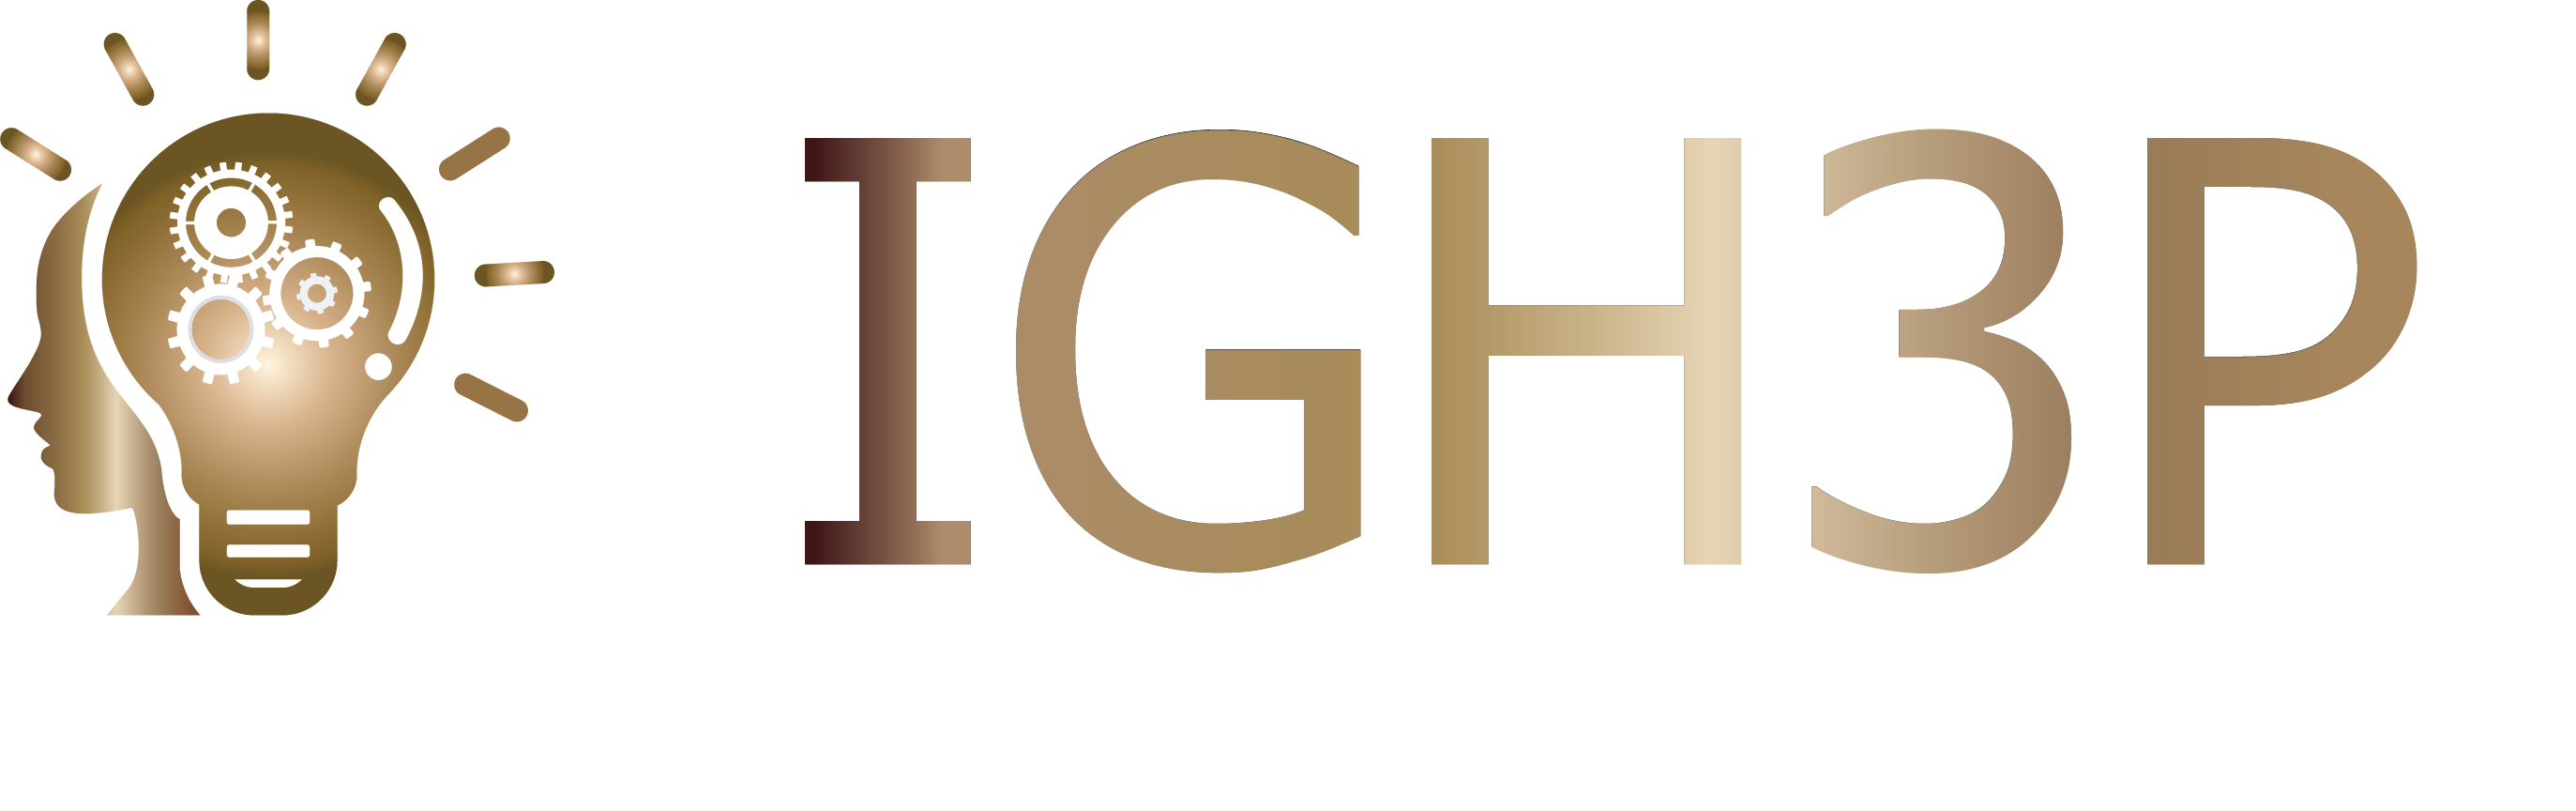 IGH3P logo